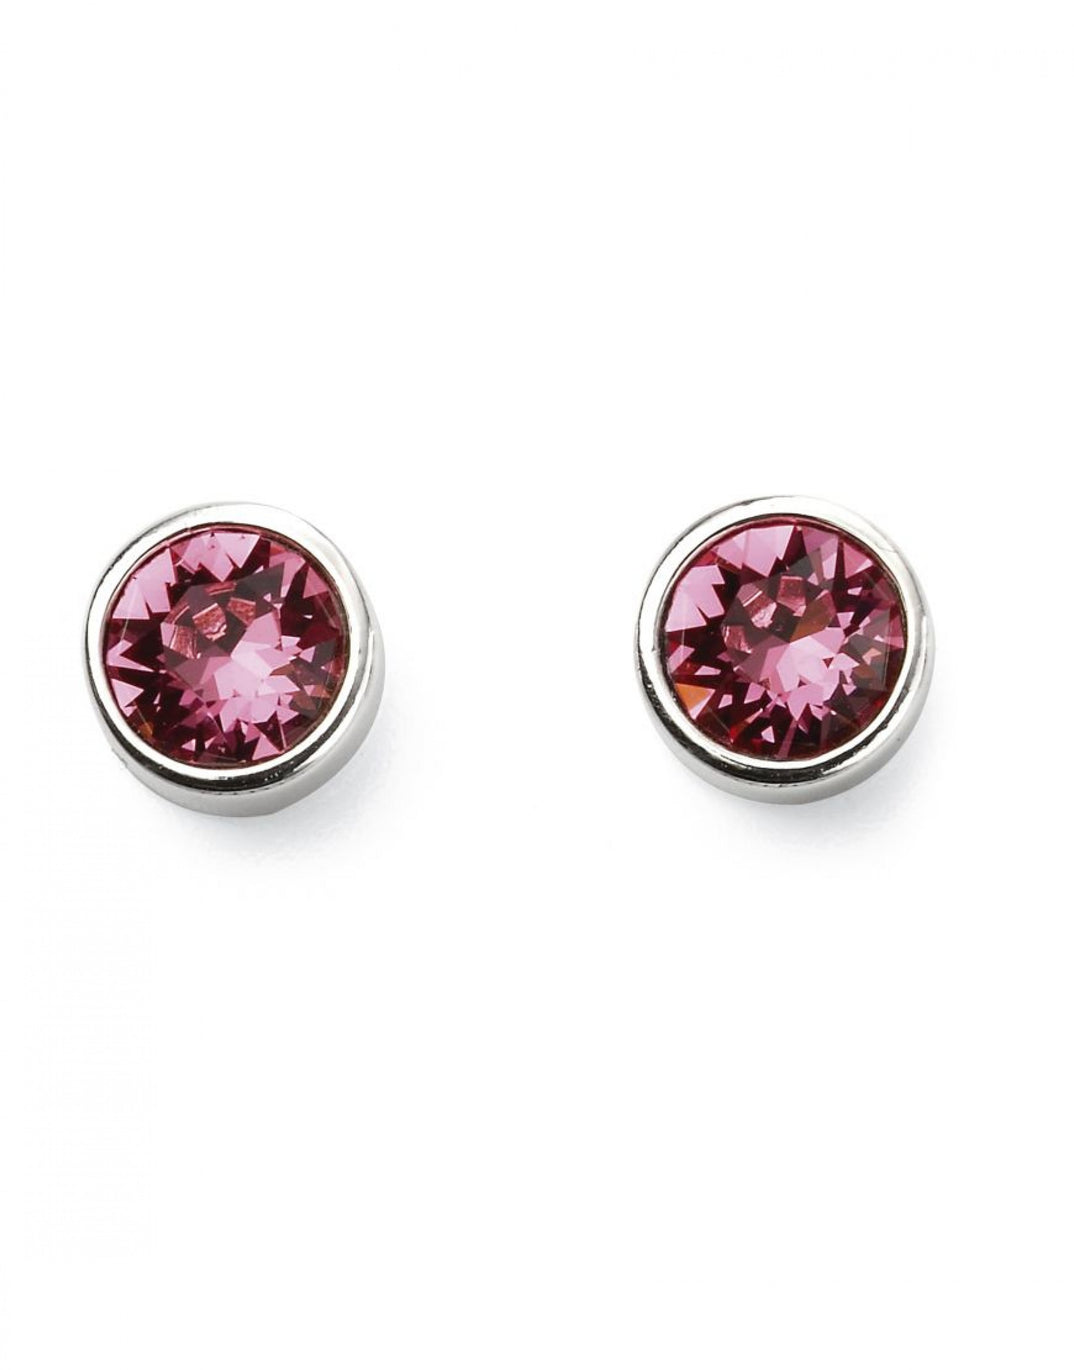 October Birthstone Rose Crystal Stud Earrings